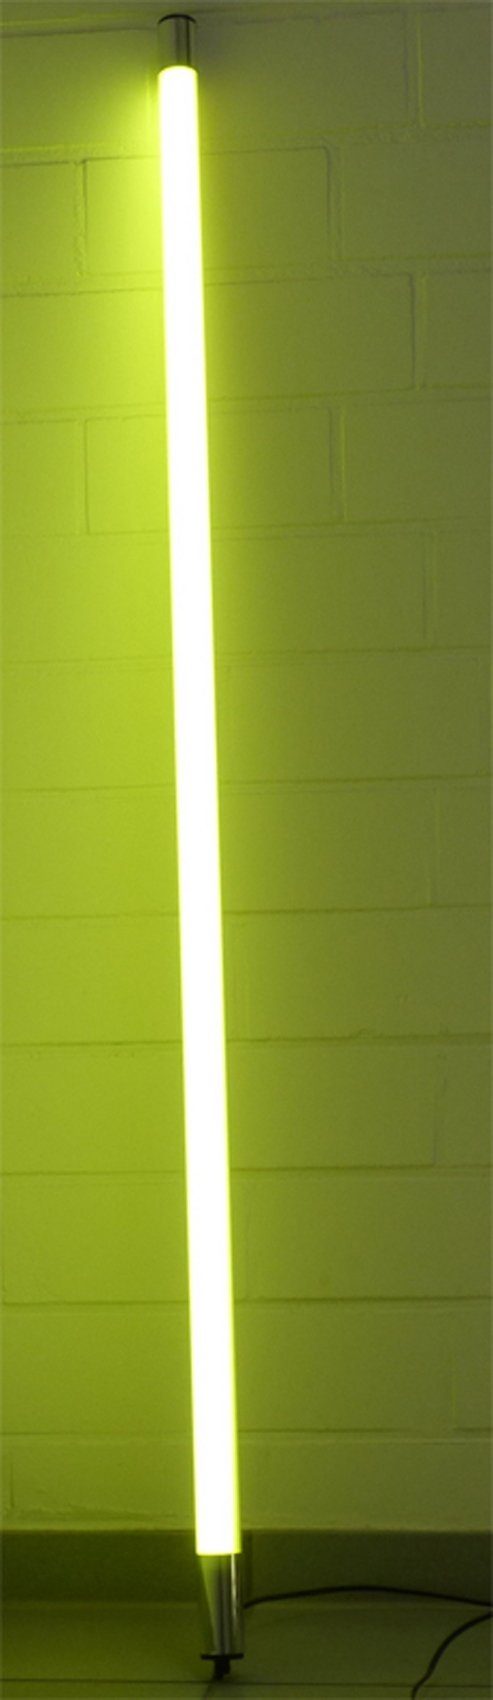 Japans erstes direkt geführtes Geschäft XENON LED Wandleuchte LED 6466 2500 1,53m Länge T8, Gelb, Lumen Leuchtstab Röhre LED IP20 Innen Satiniert Xenon